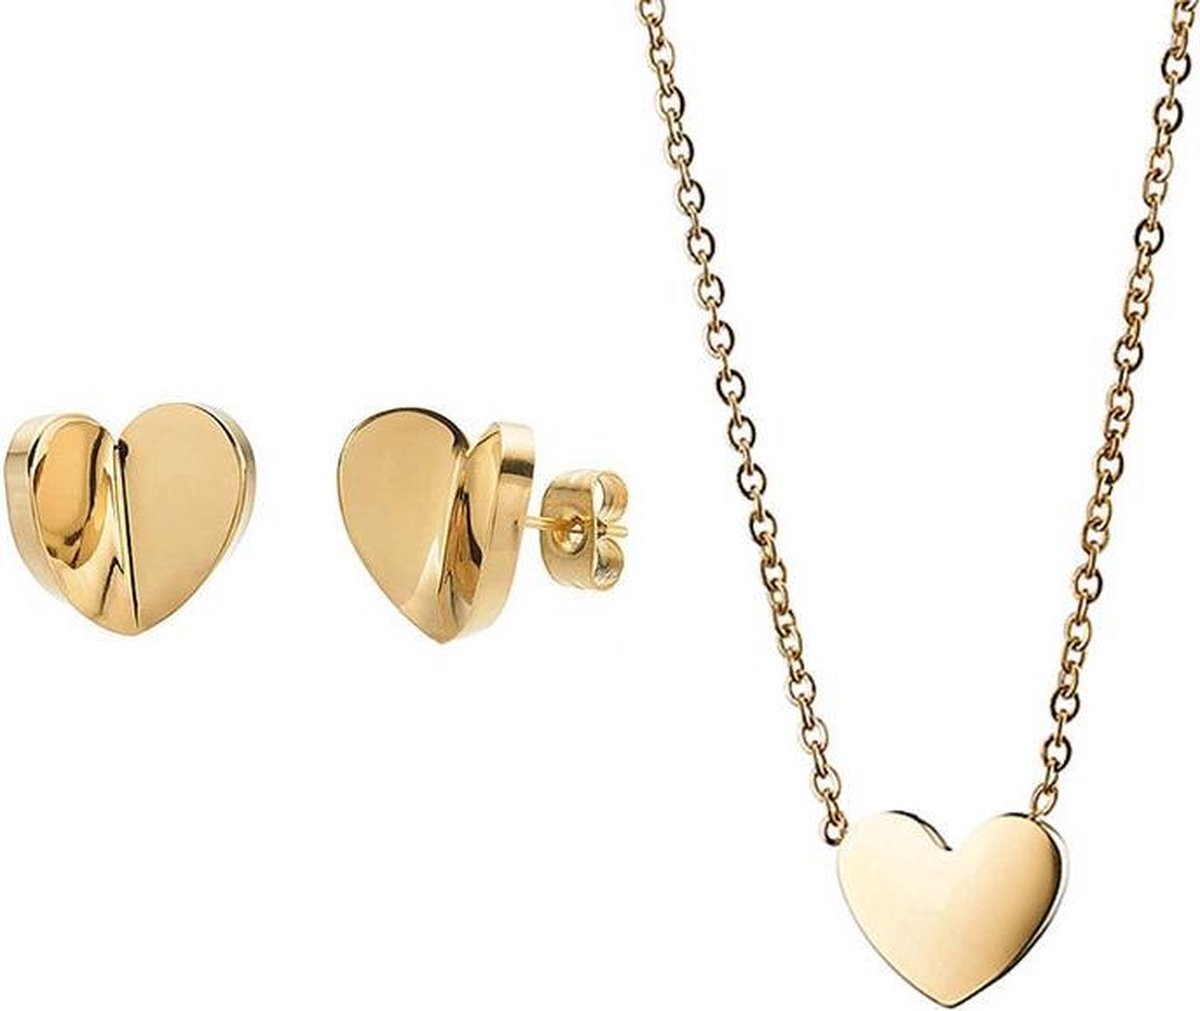 Uitroepteken aantrekken Haast je goedkoop hartjes sieraden setje ketting en oorbellen goud ter cadeau |  bol.com